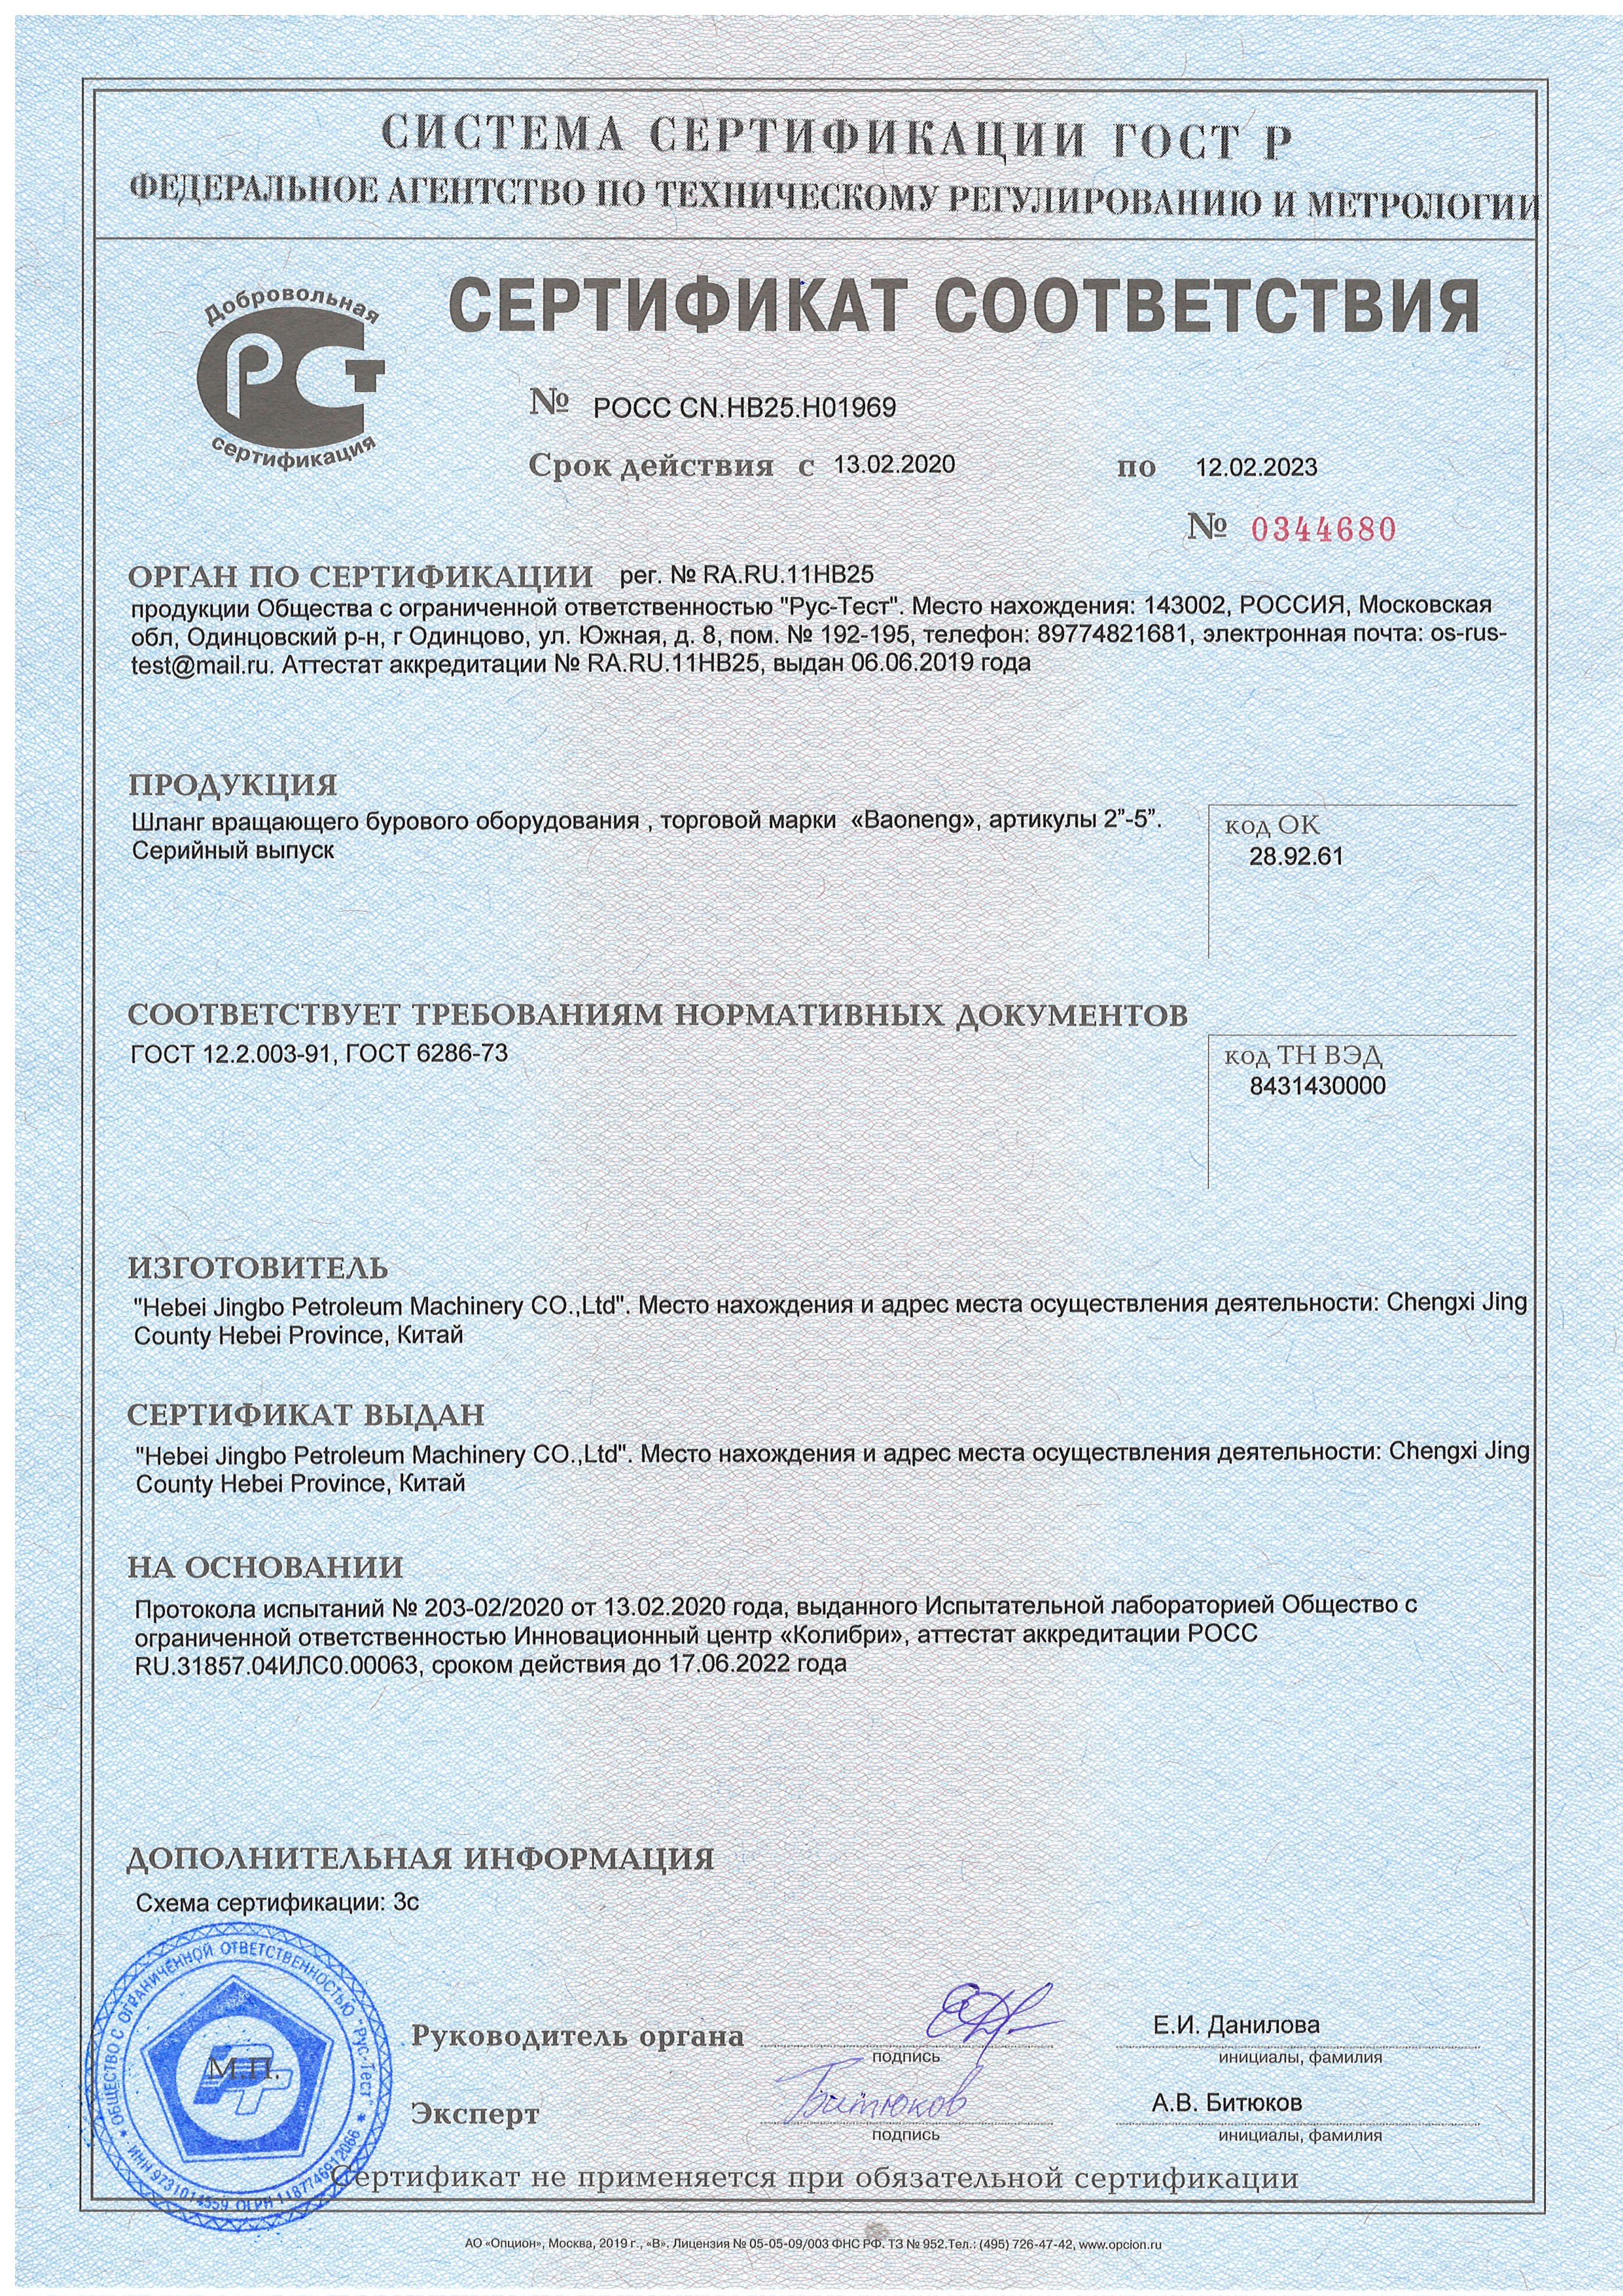 сертификат гост - шланг вразщающего бурового оборудования 